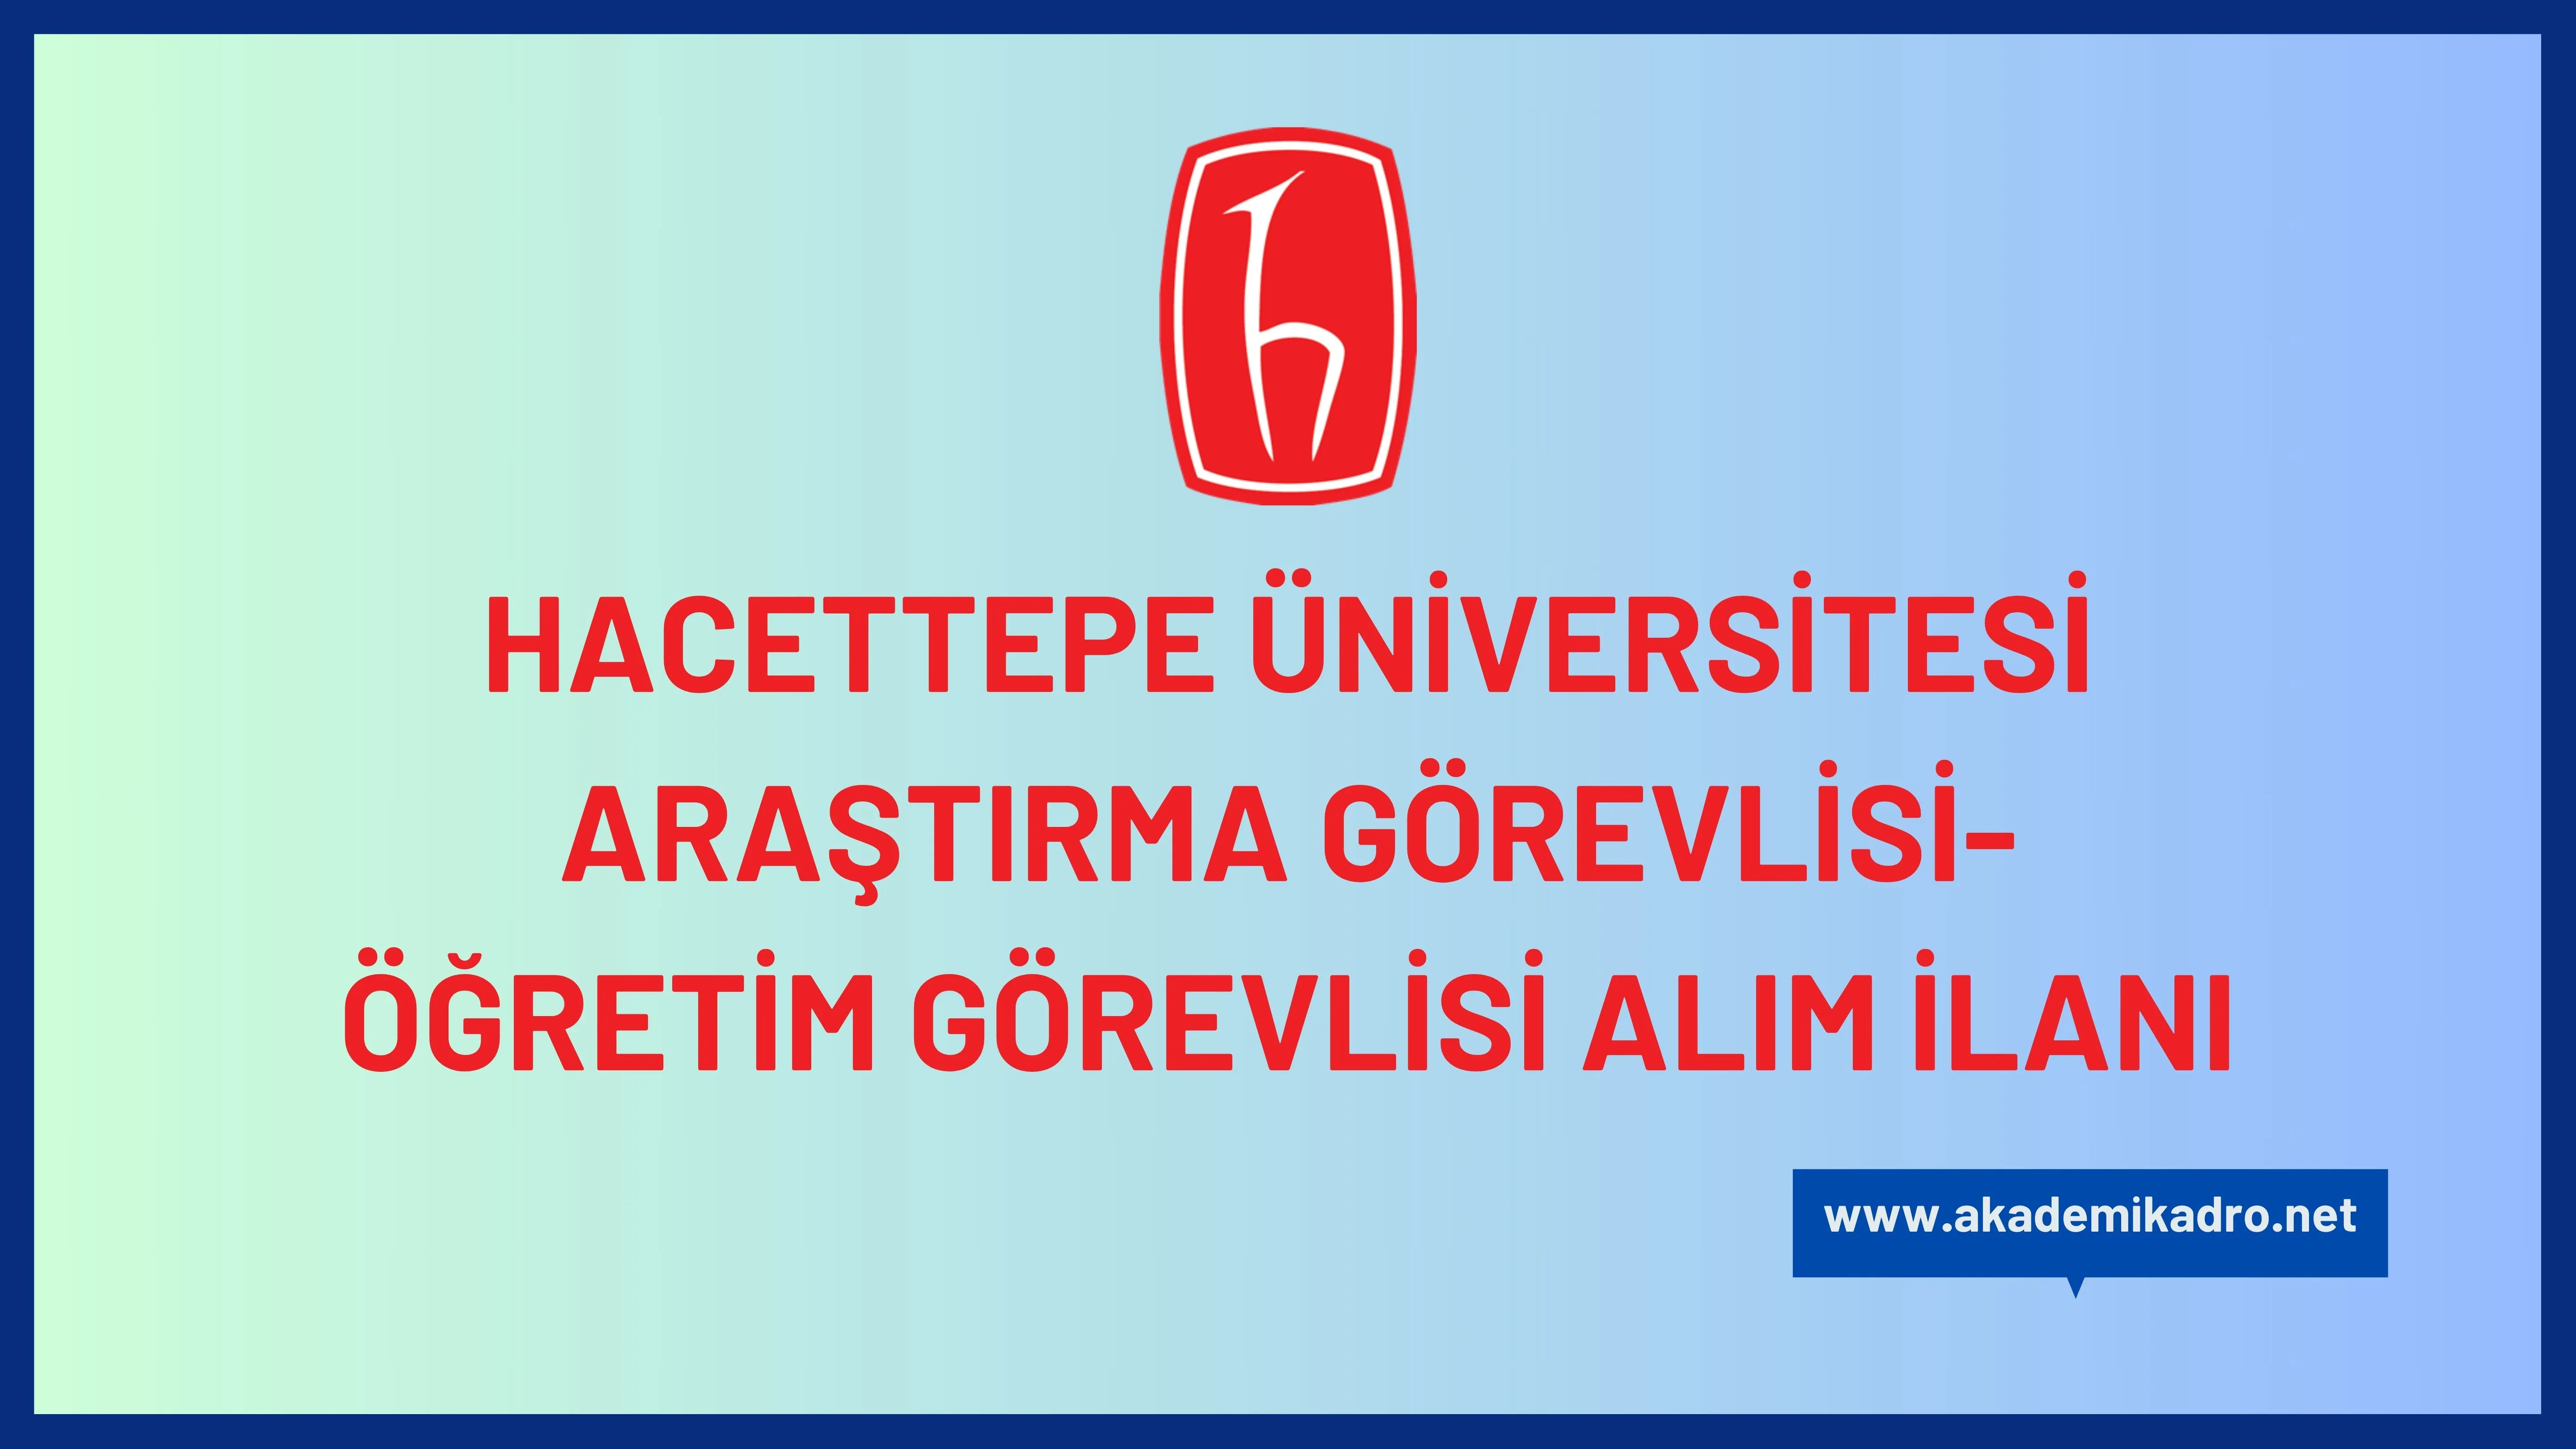 Hacettepe Üniversitesi 17 araştırma görevlisi ve 4 Öğretim görevlisi alacaktır. Son başvuru tarihi 16 Ekim 2023